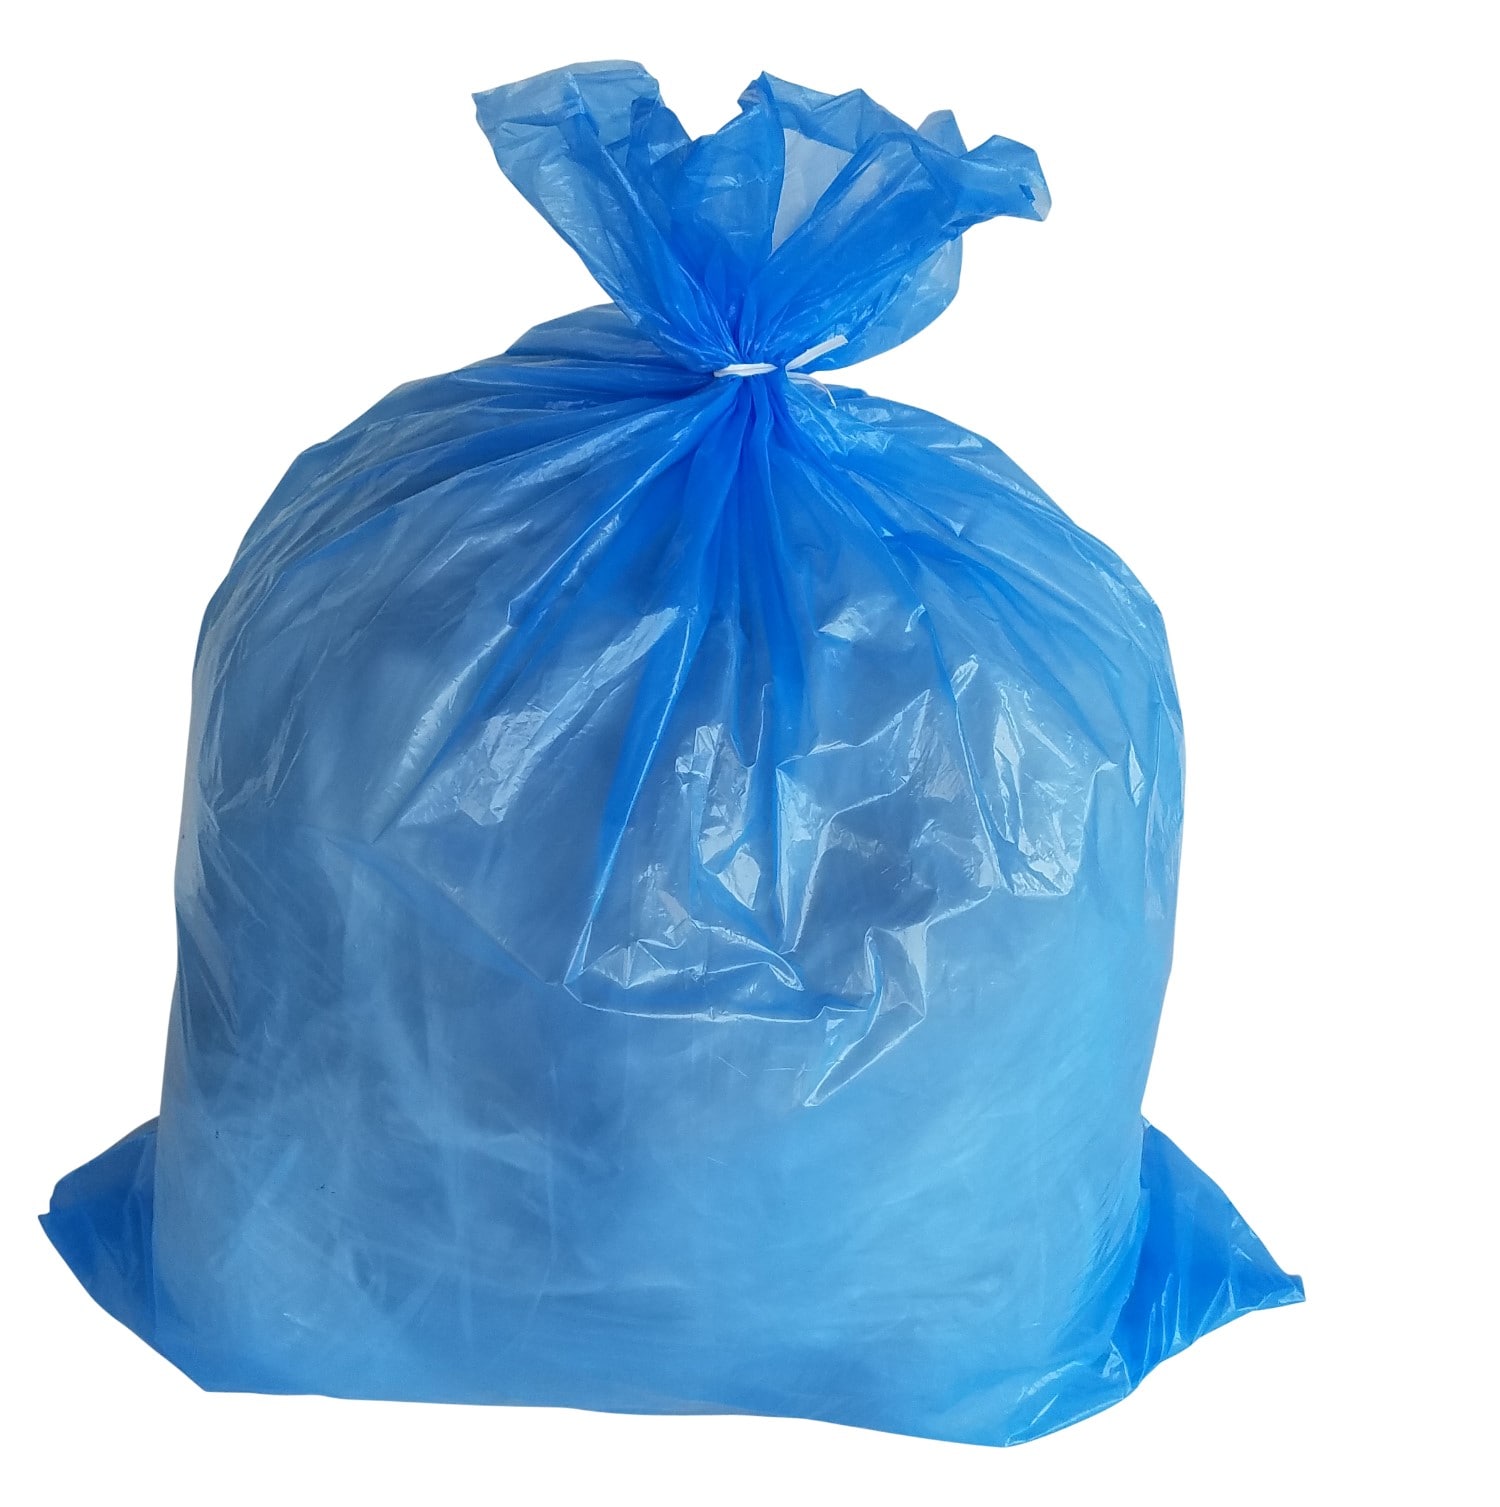 Sampling Plastic Bags 100pcs Green Plastic Bags 